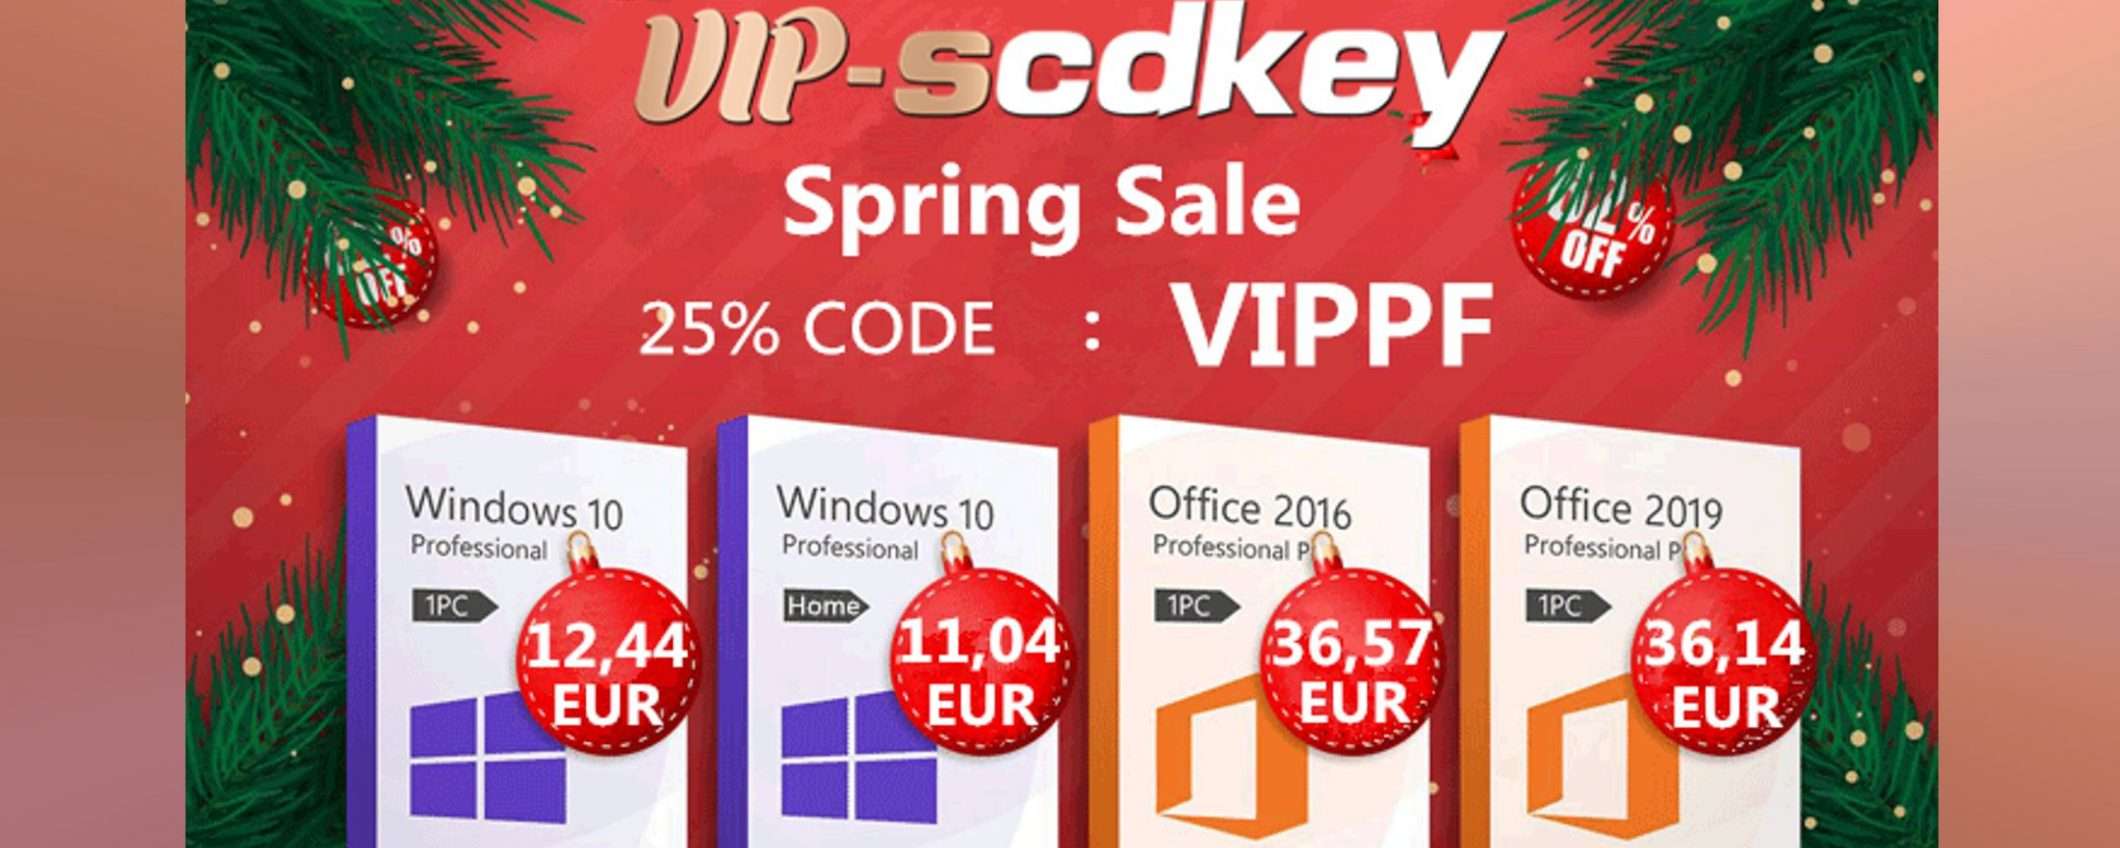 VIP-SCDKey, sconti invernali: Windows 10 Pro OEM solo 12€